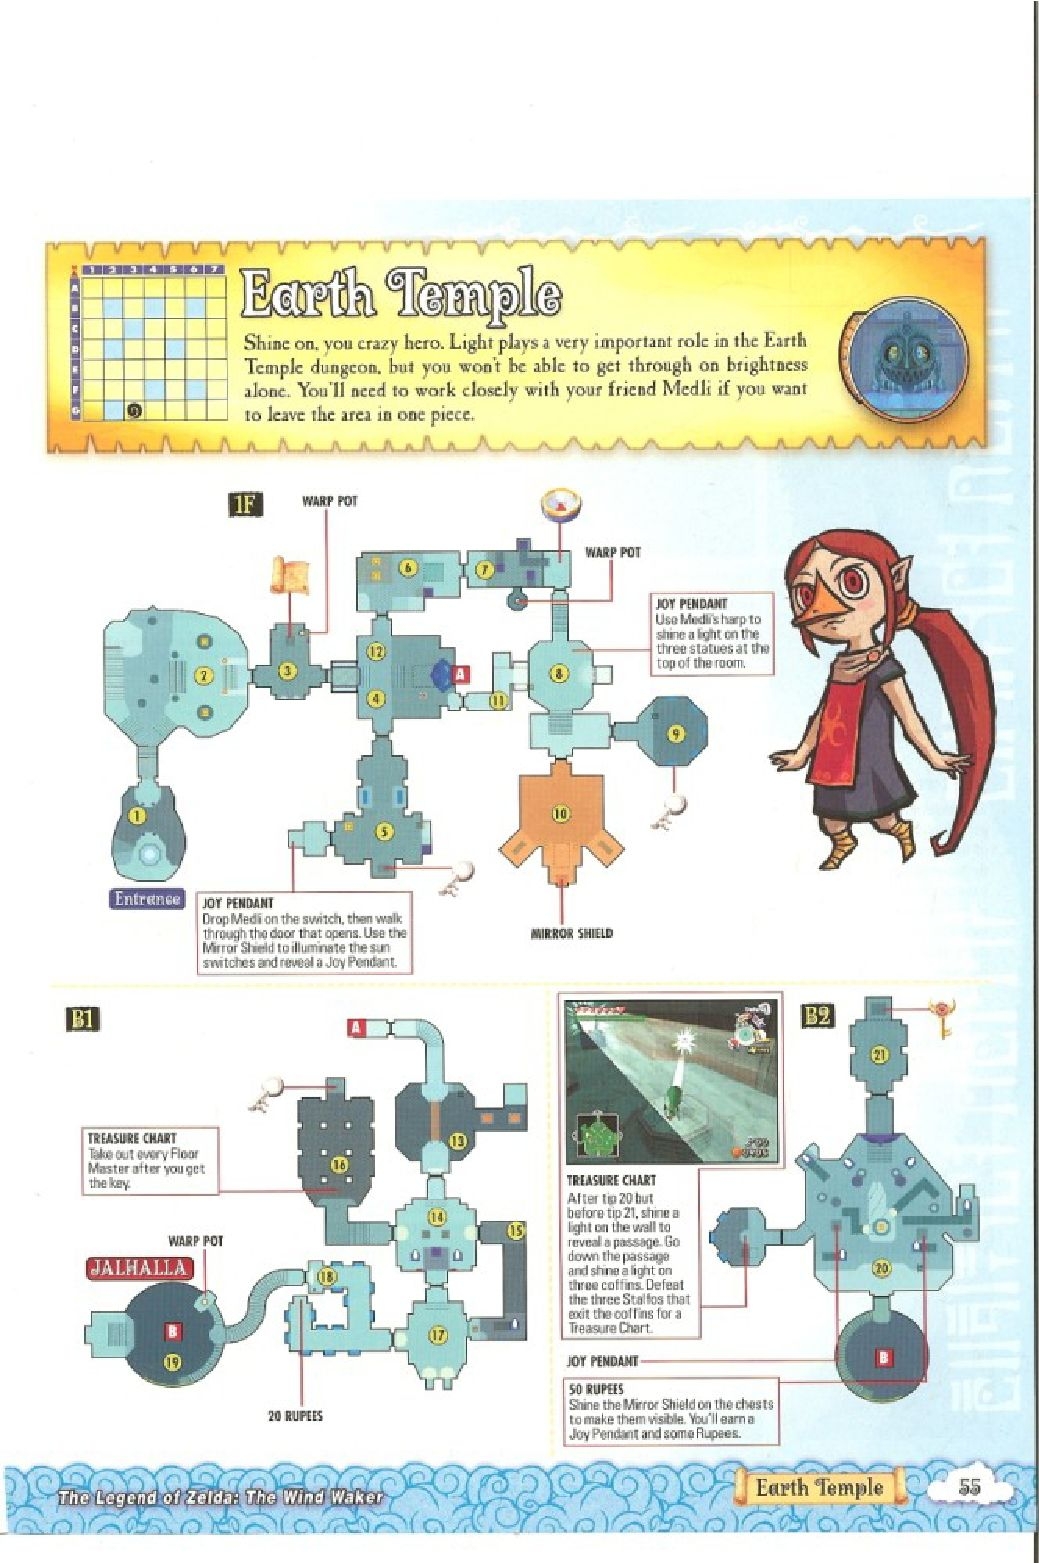 The Legend of Zelda - wind waker - Strategy Guide 57